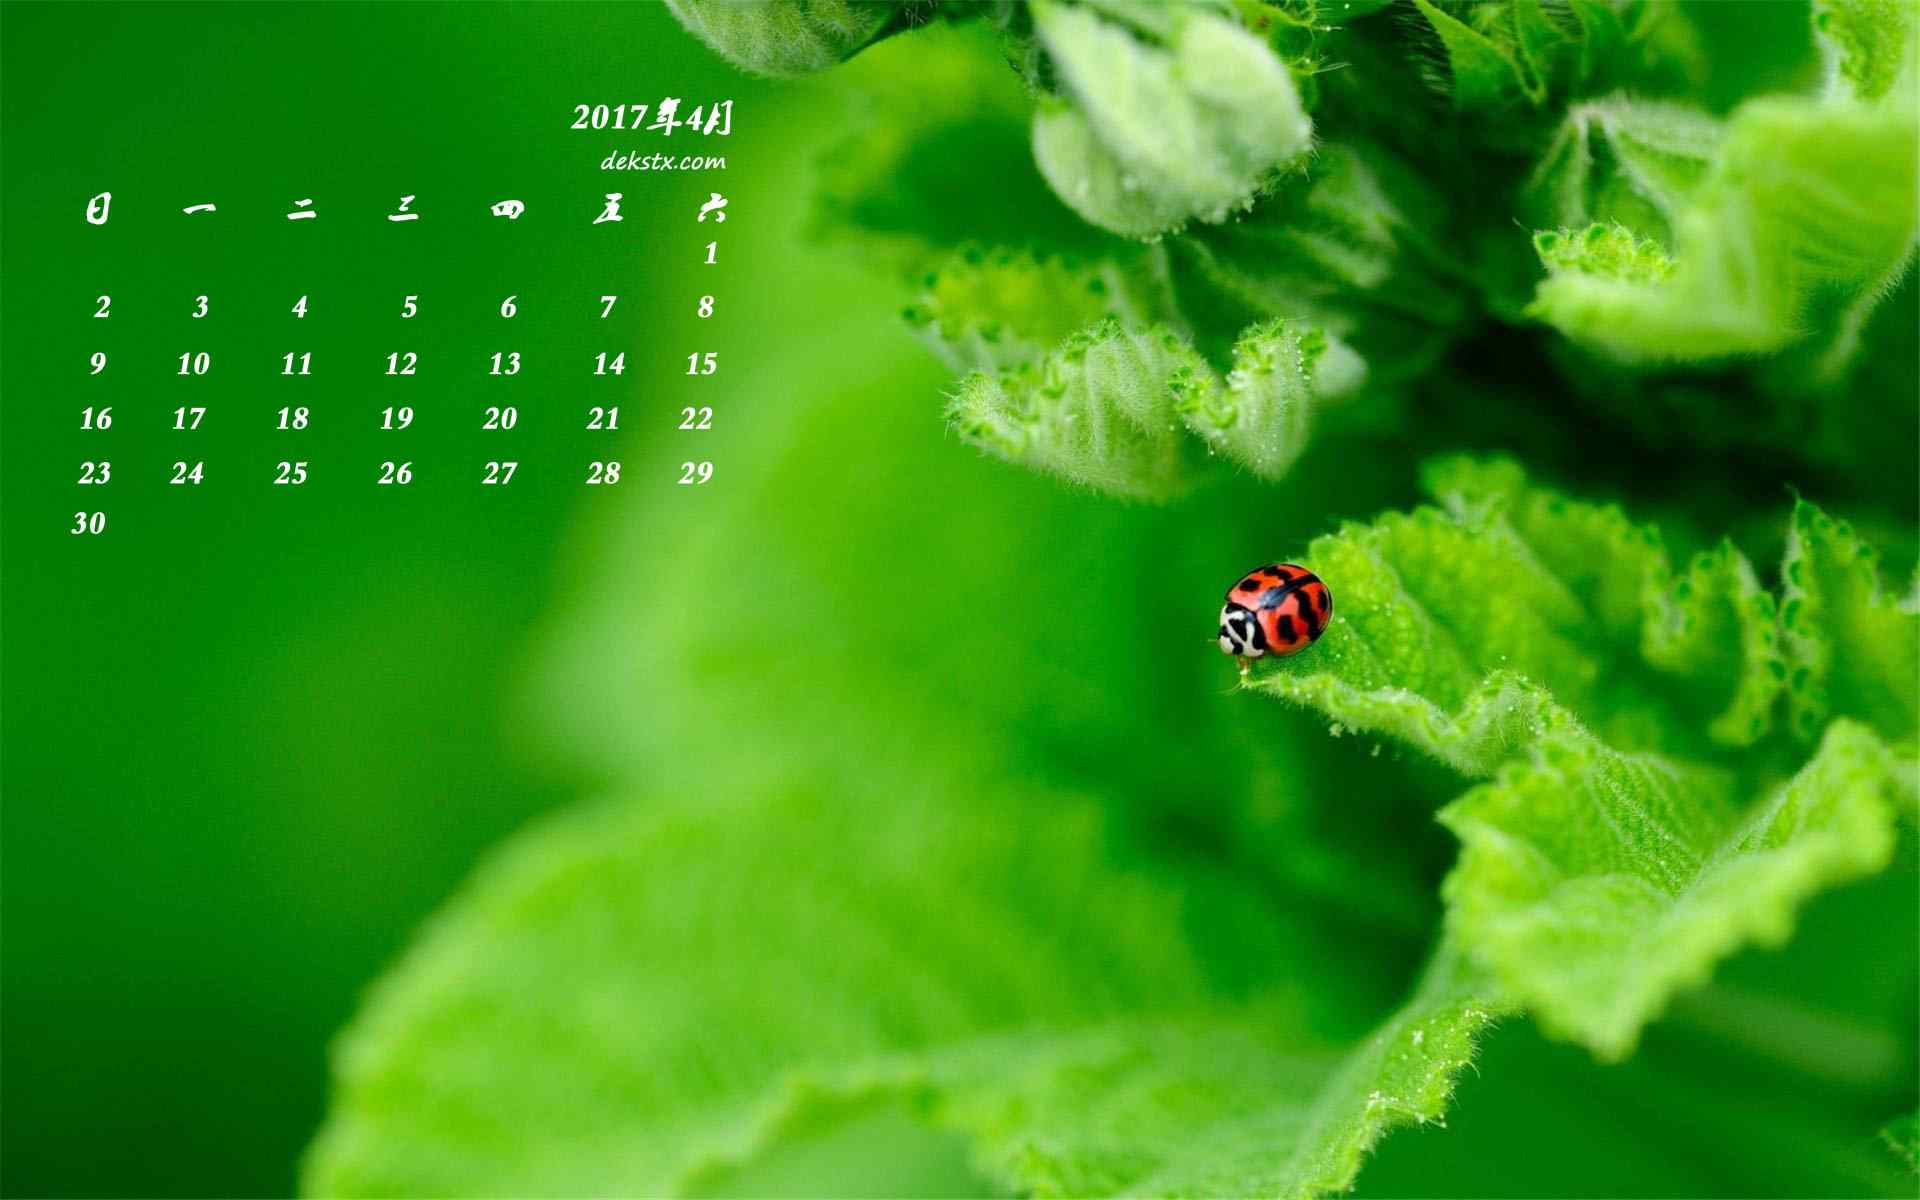 2017年4月日历绿色植物与瓢虫护眼壁纸